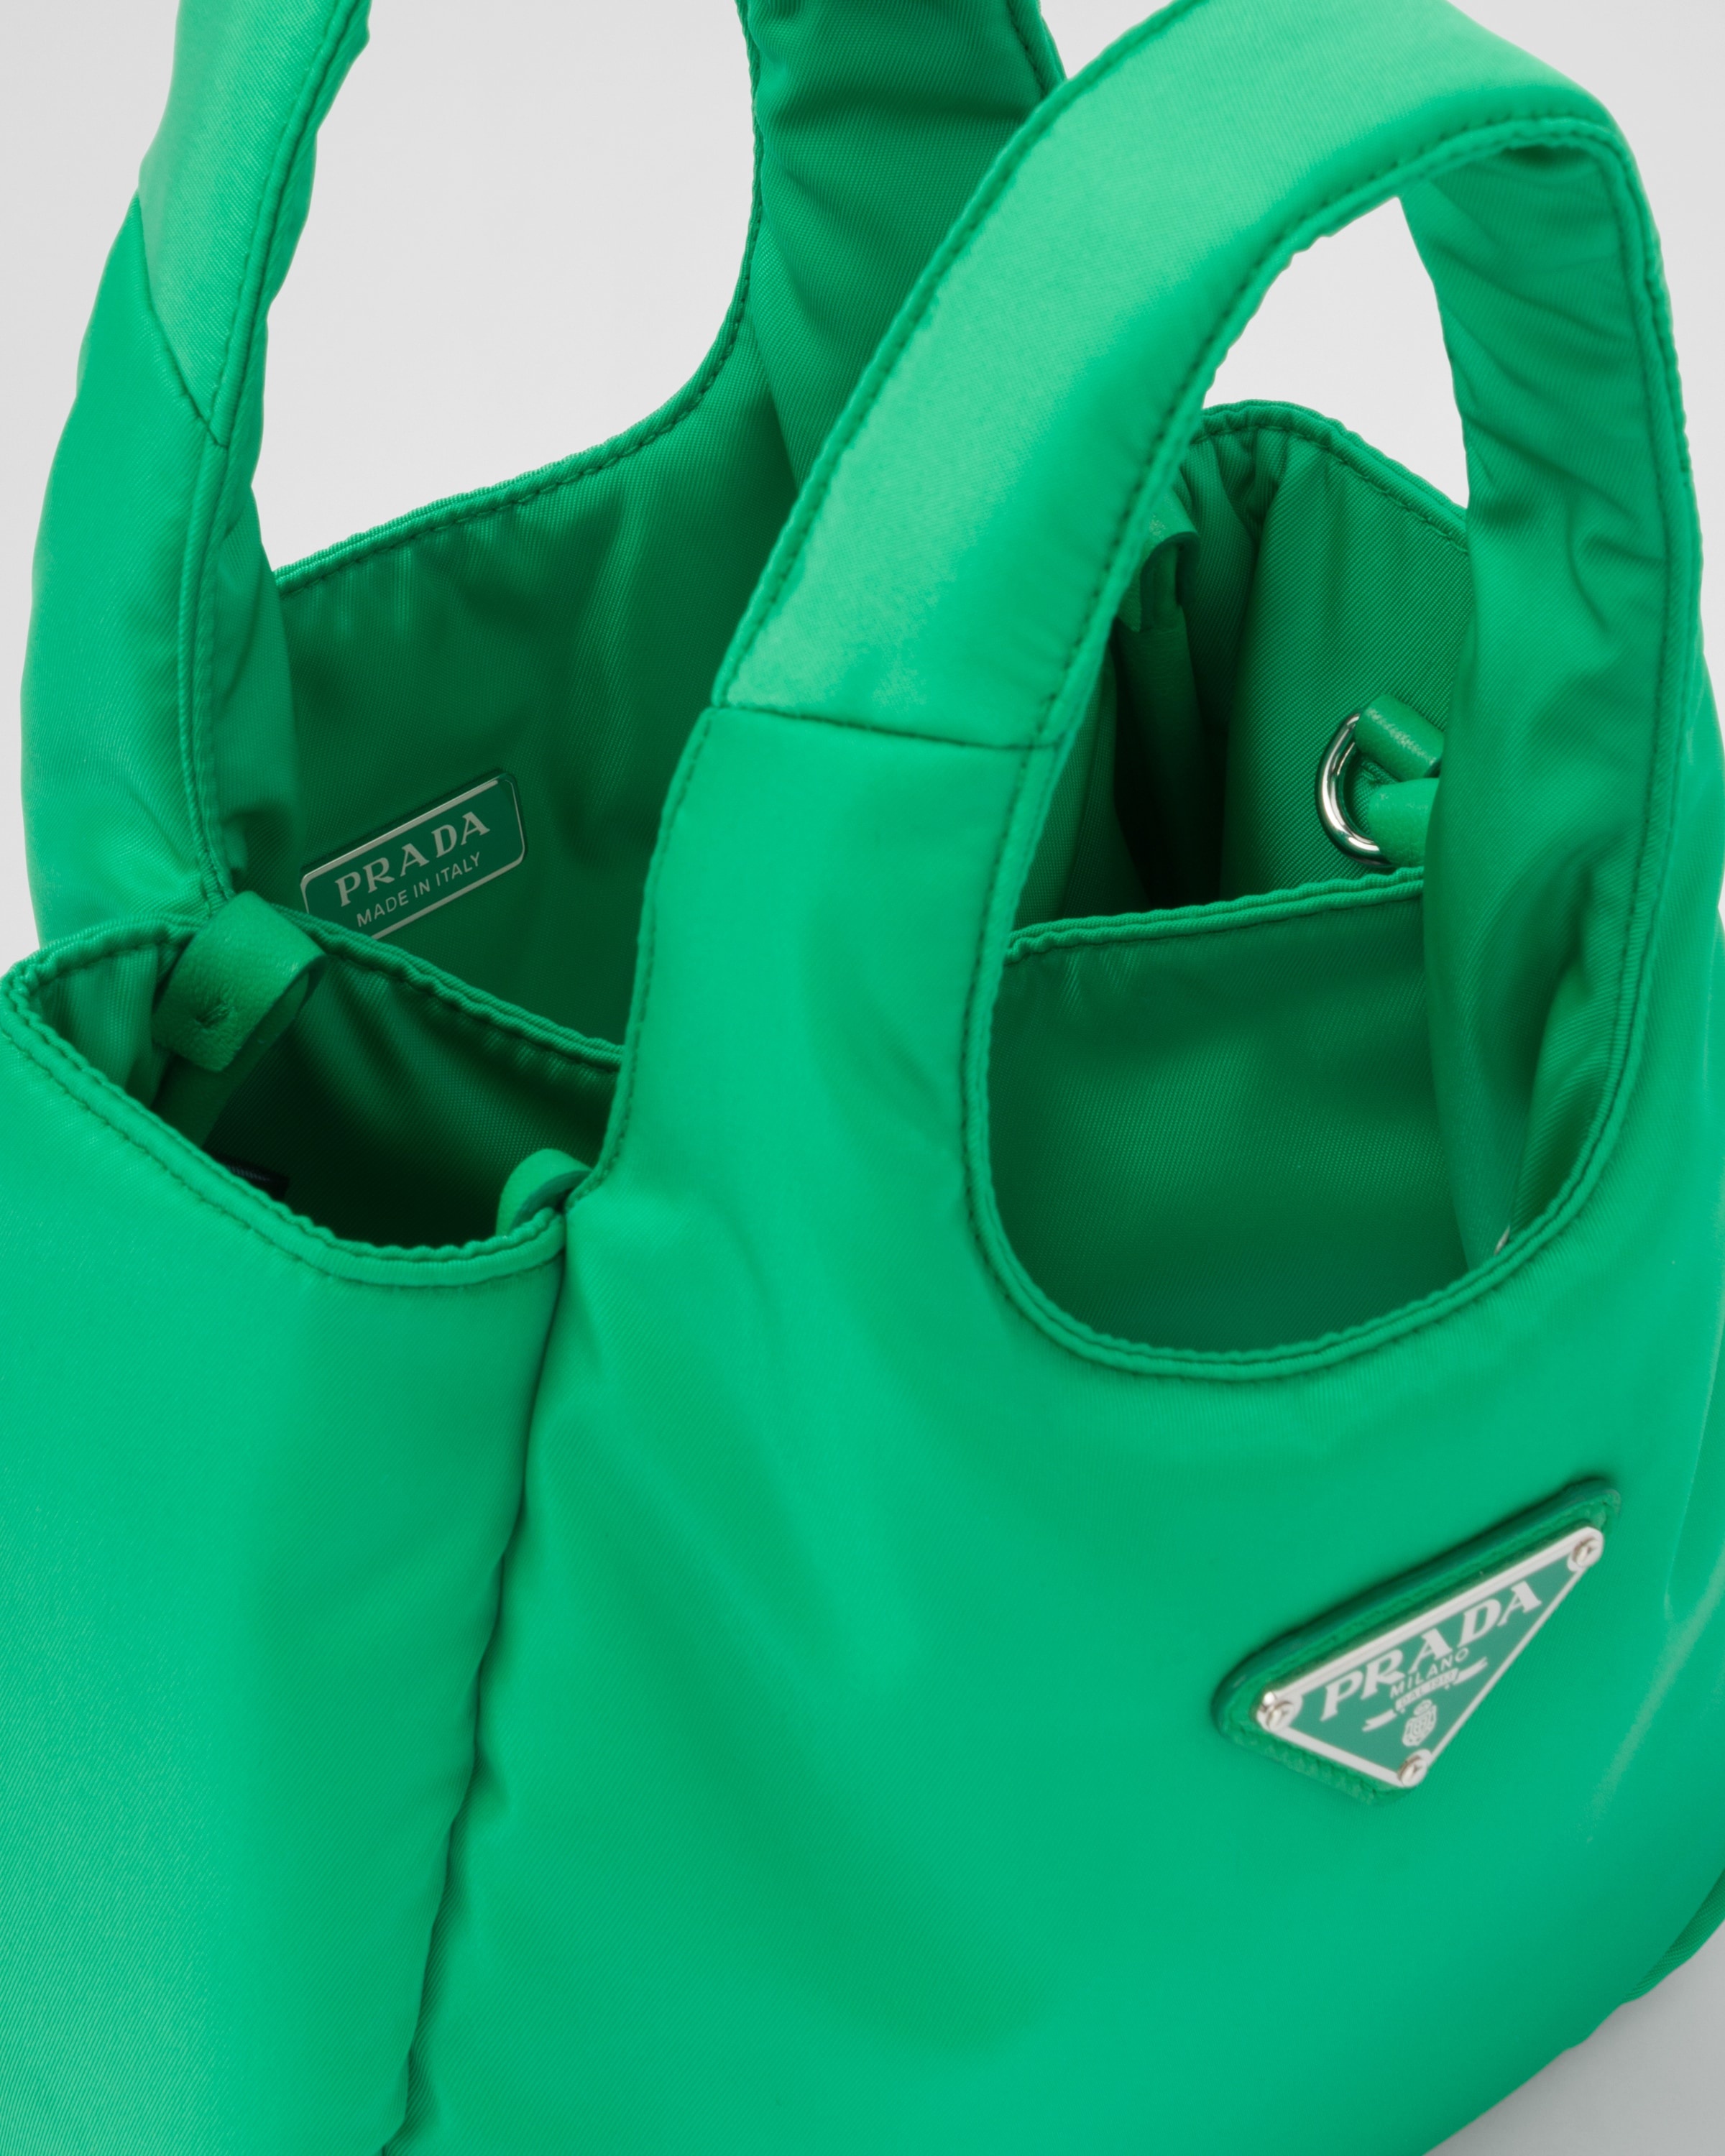 lime green prada bag